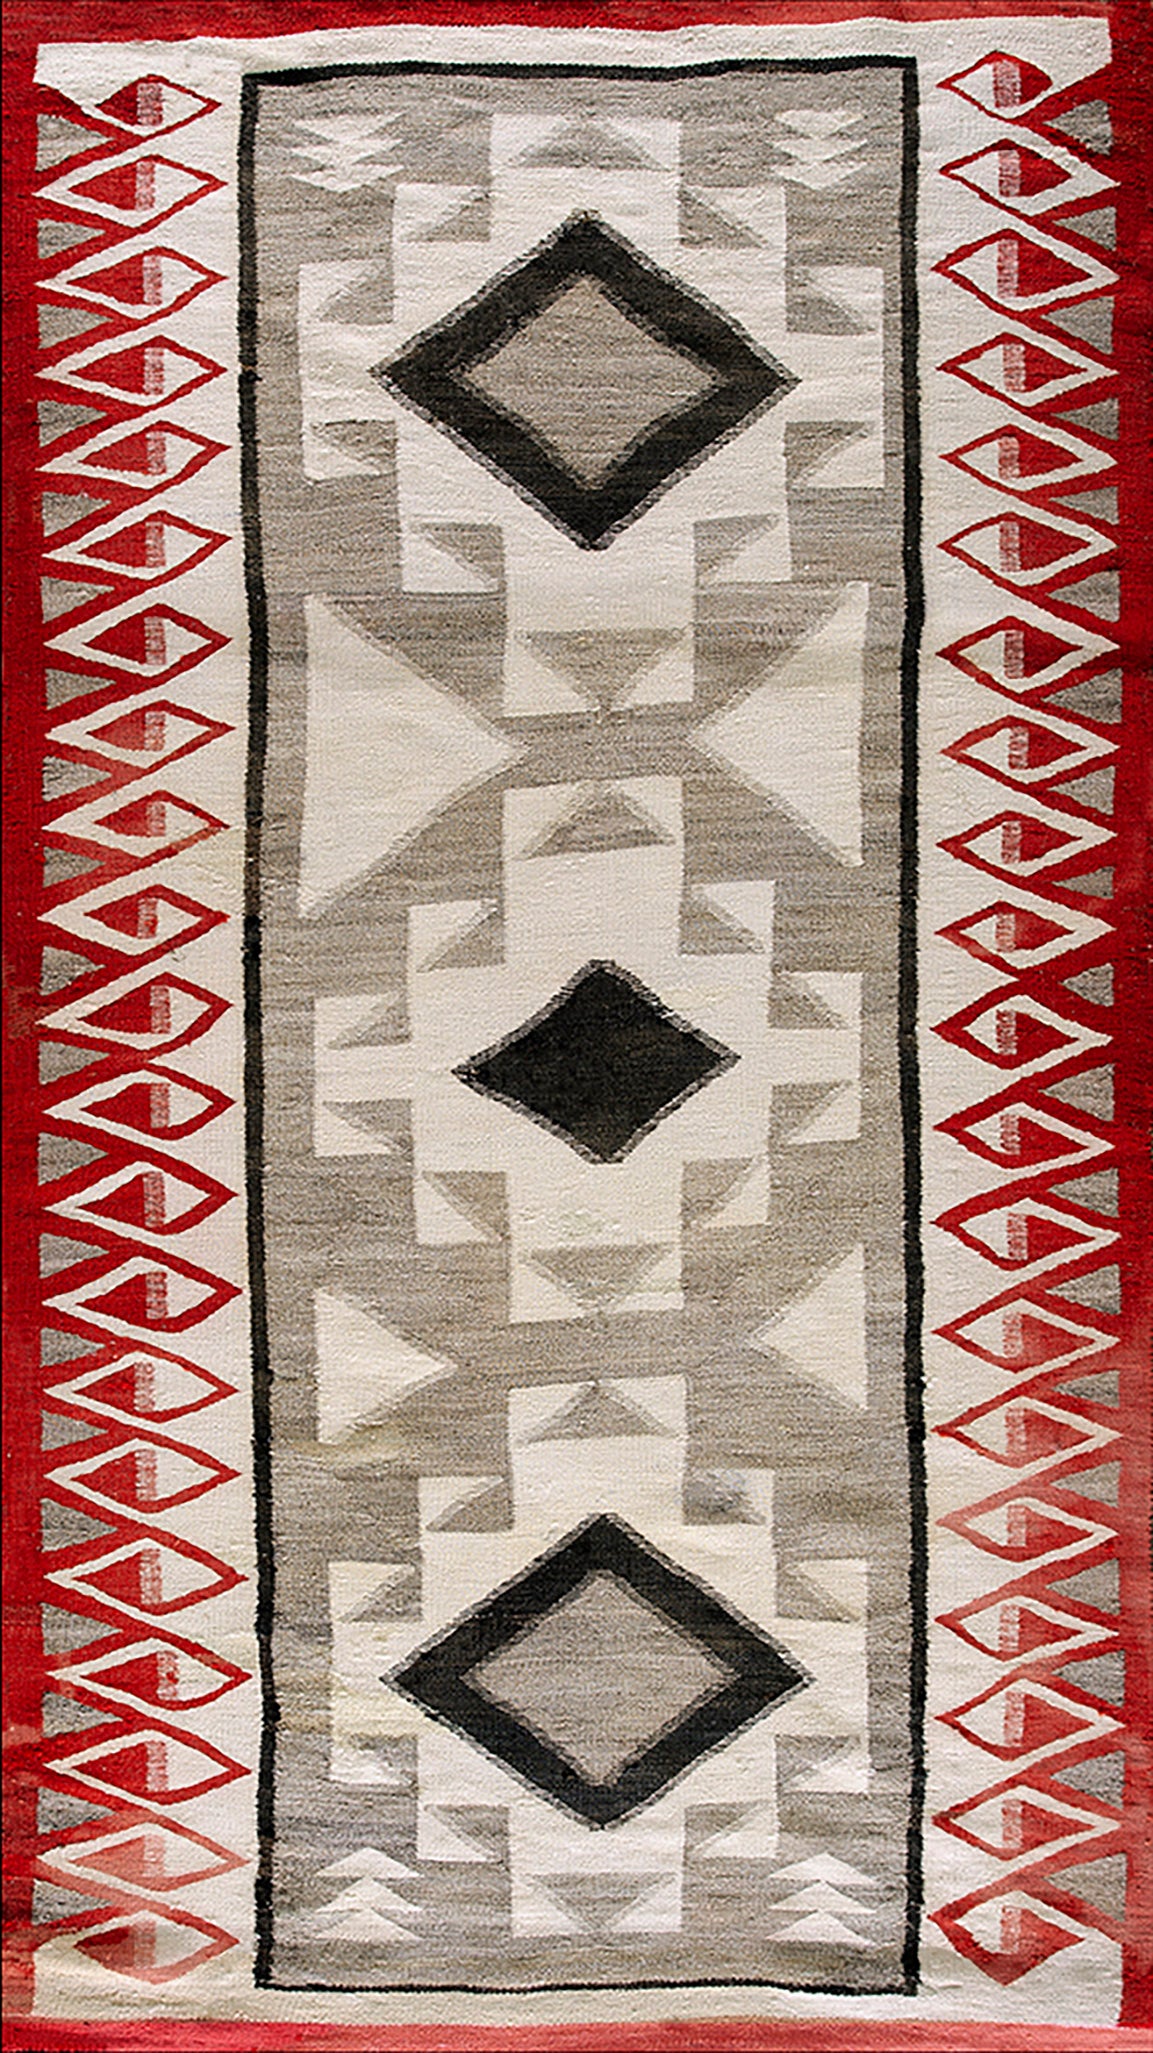 1930s American Navajo Carpet ( 4'9"x 6'9" - 15 x 205 cm ) For Sale